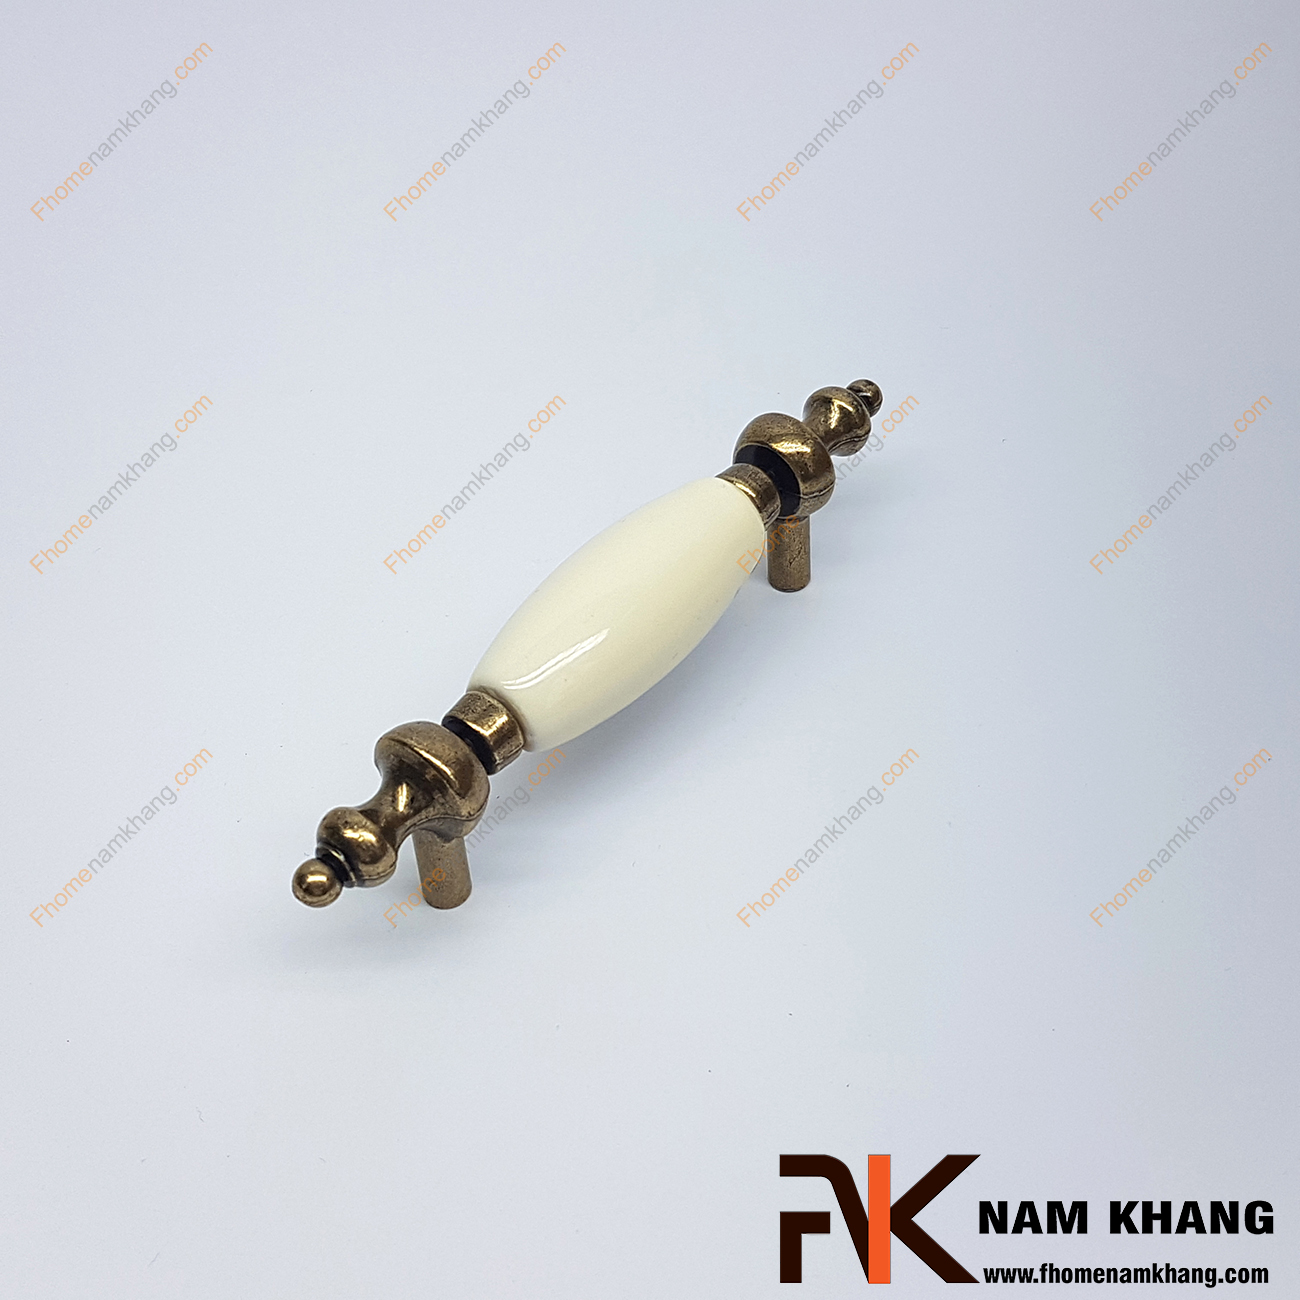 Tay nắm tủ cổ điển NK325-76KC là một dạng tay nắm kết hợp sứ cổ điển, giữa tay nắm là vòng sứ tròn bóng được bo tròn mềm mại và dịu mắt.